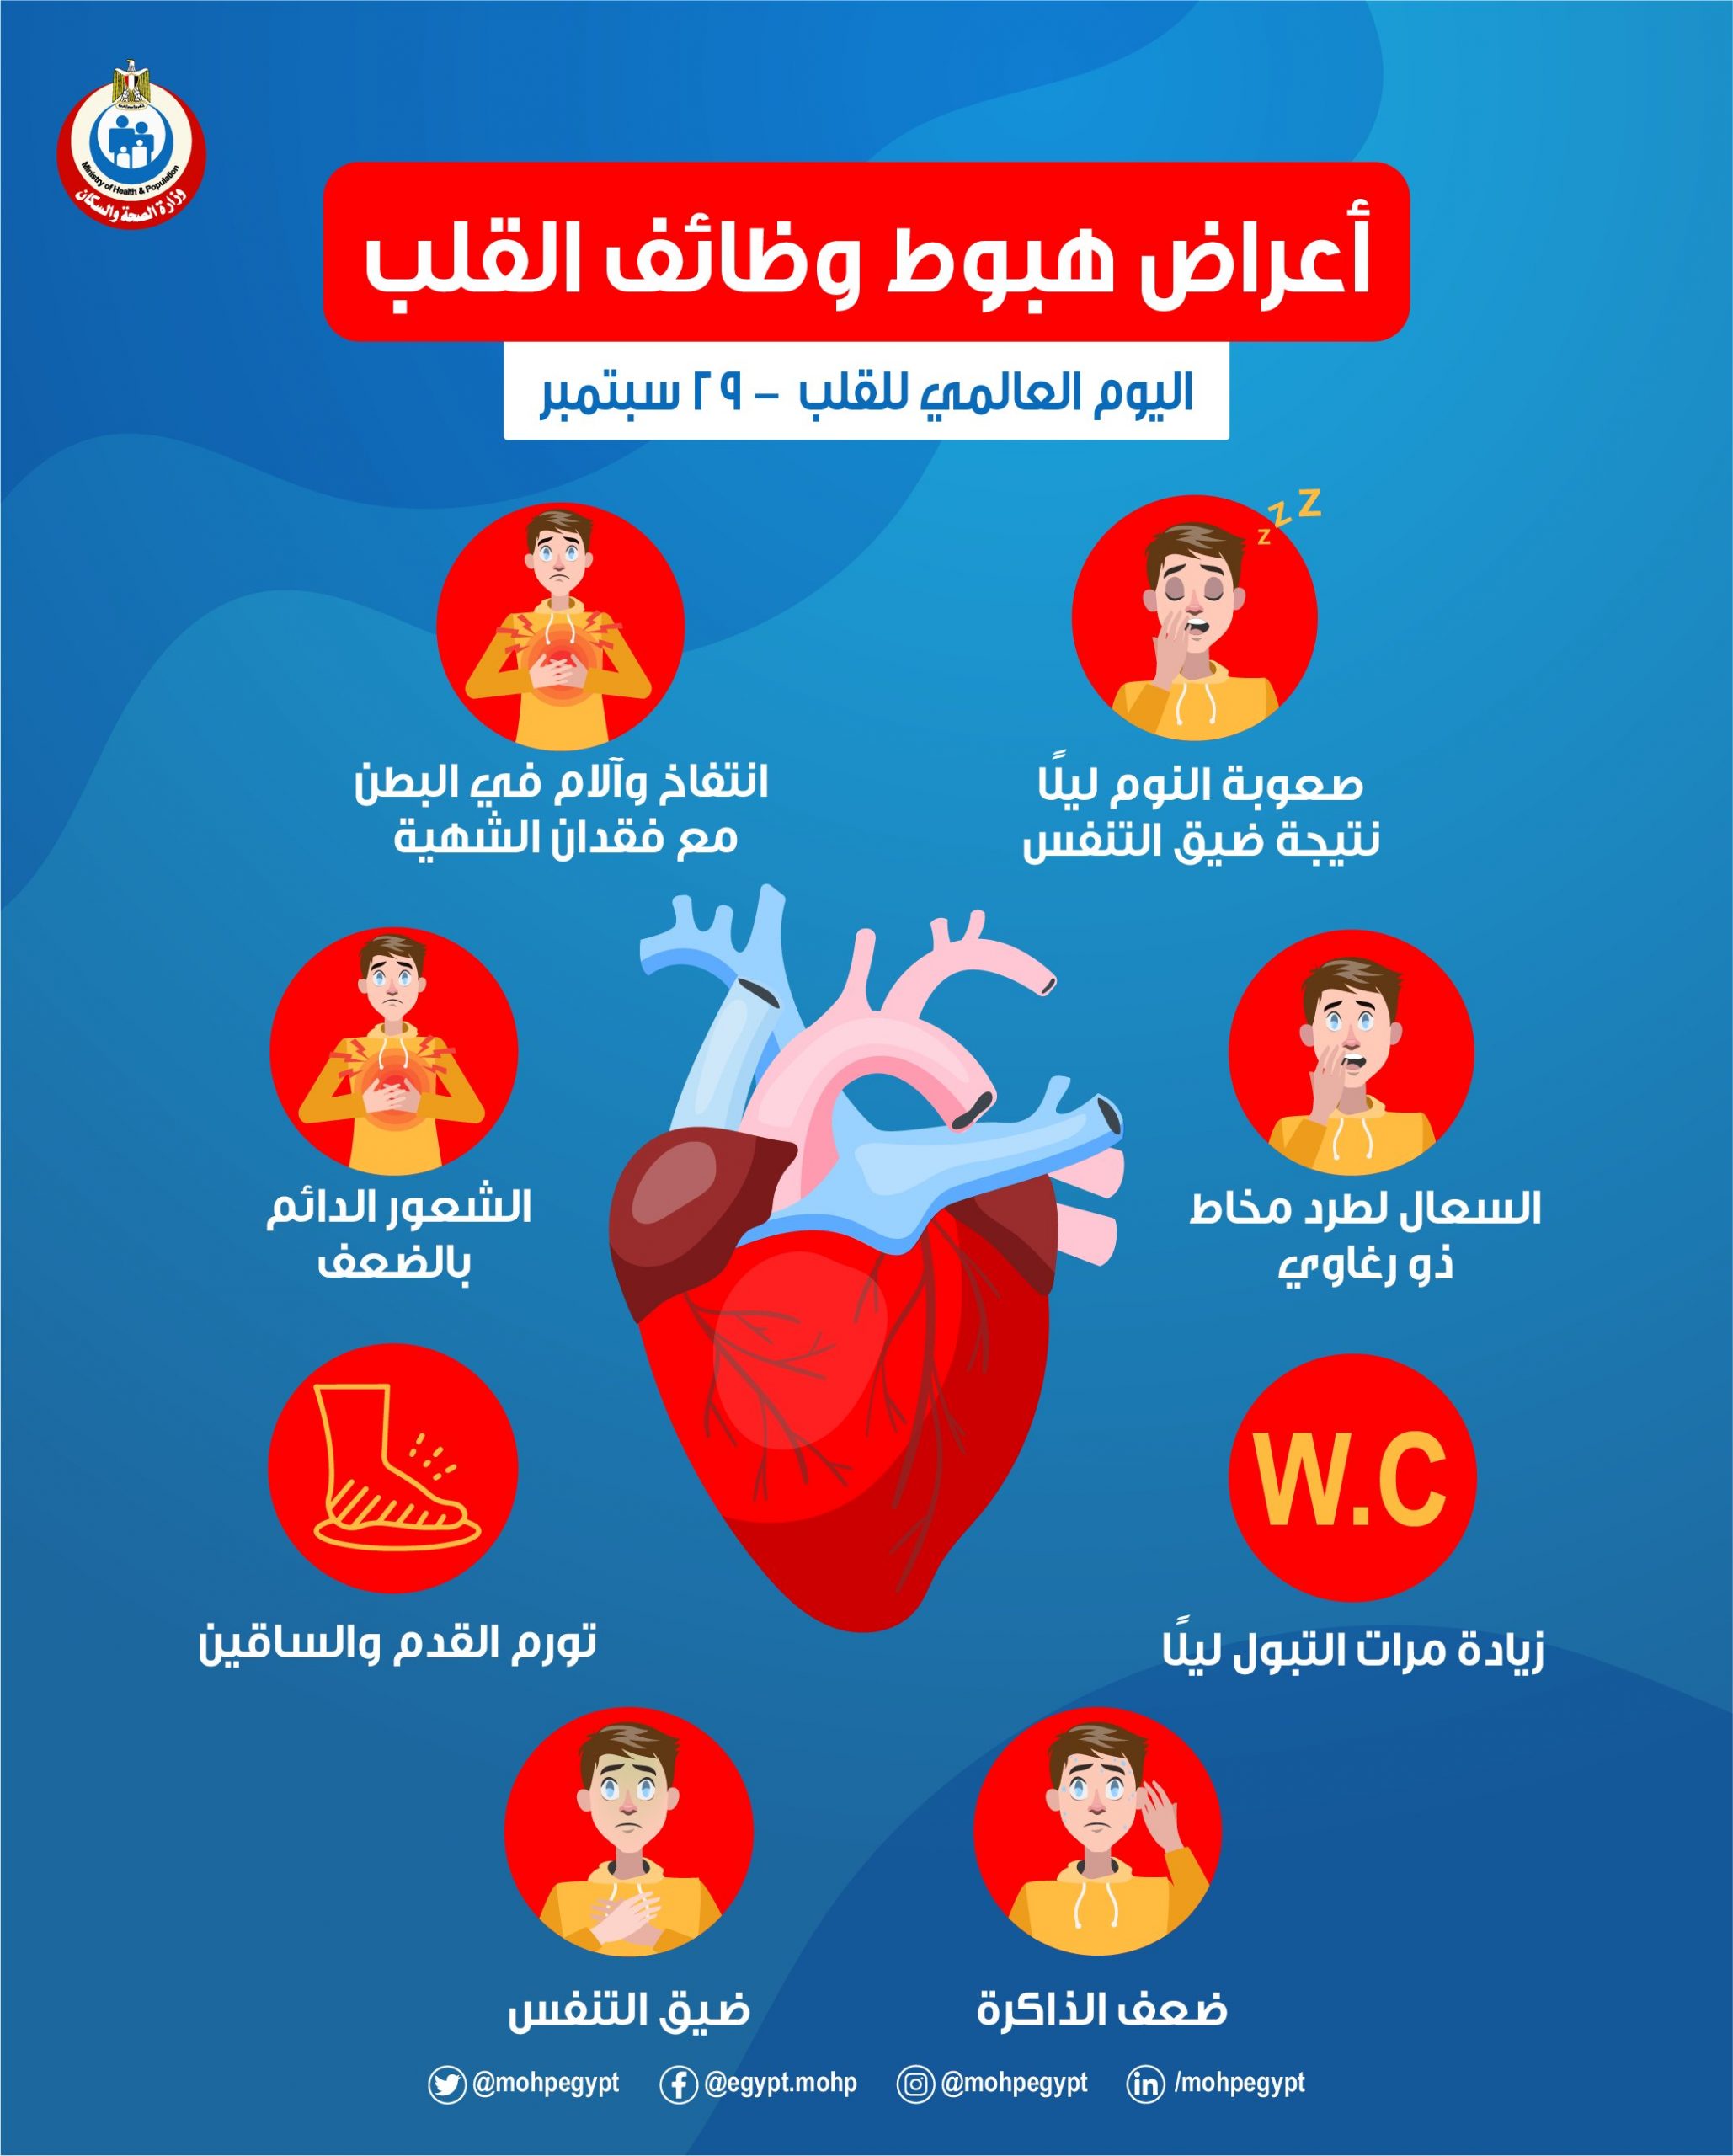 8 علامات تشير إلى هبوط وظائف القلب.. توجه إلى المستشفى فوراً